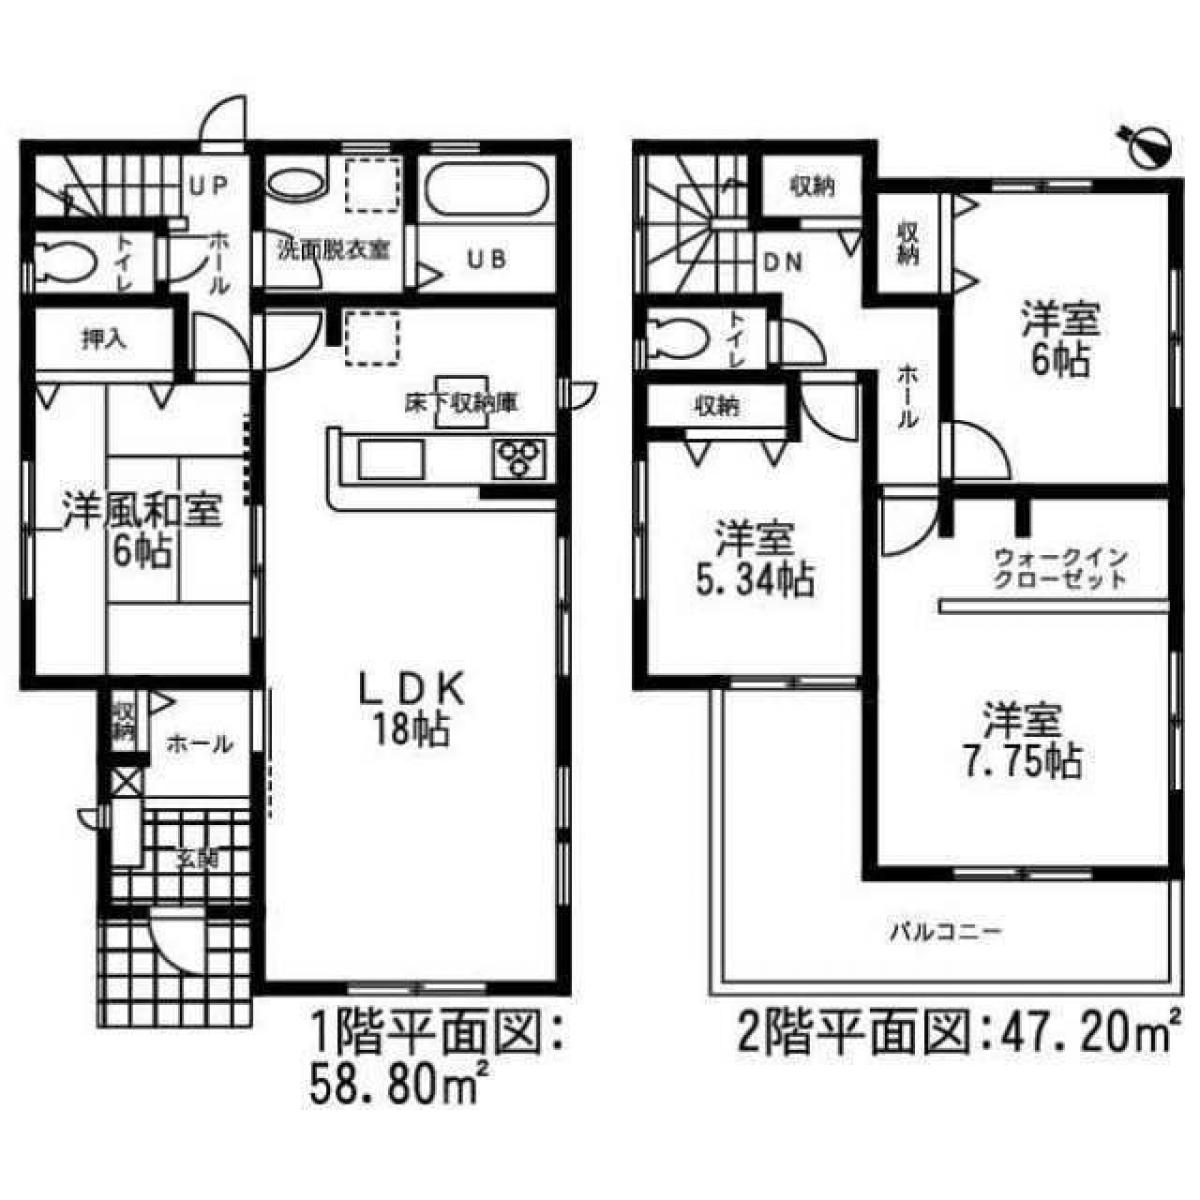 Picture of Home For Sale in Tajimi Shi, Gifu, Japan